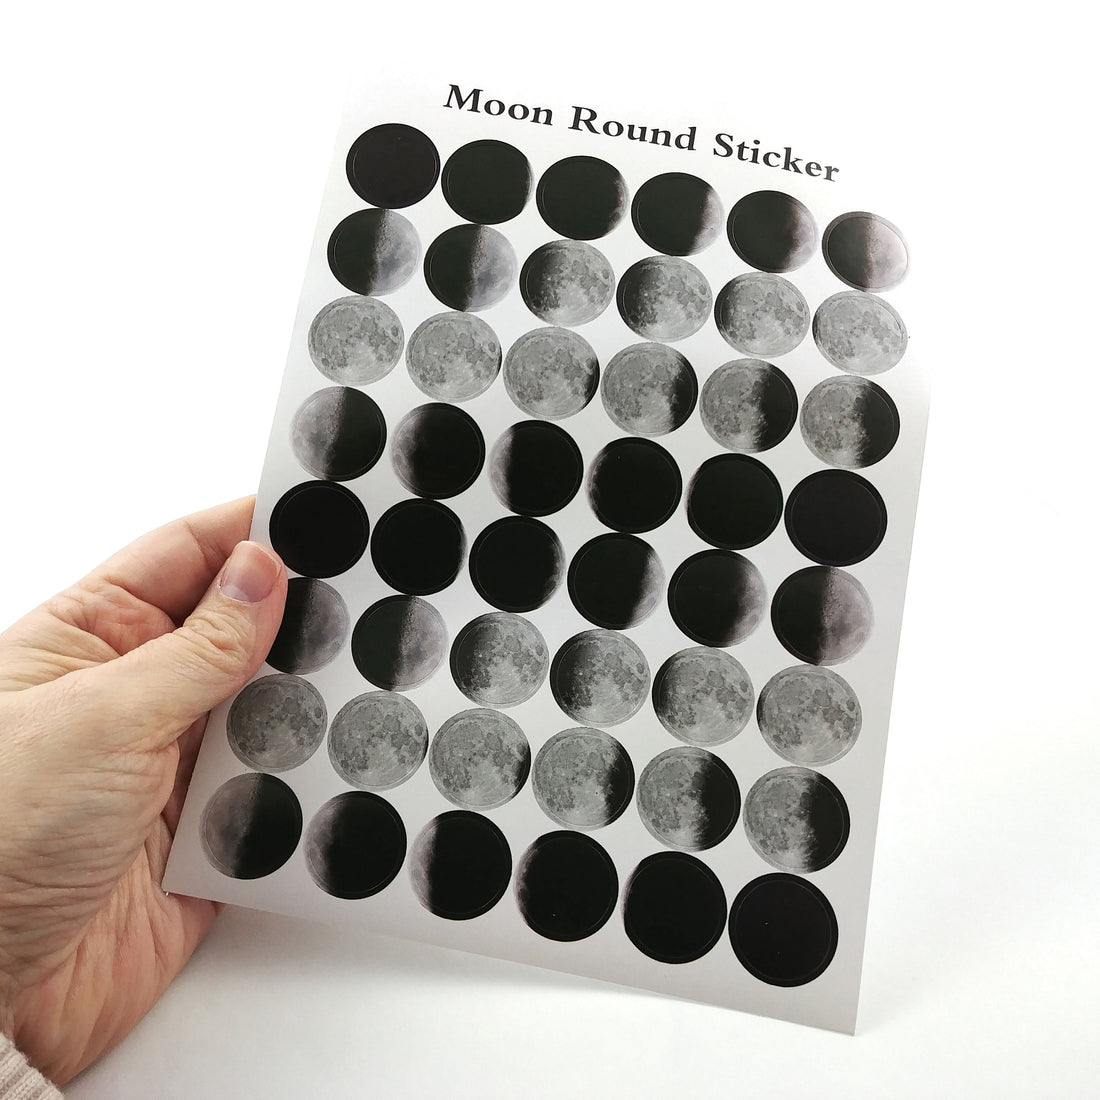 Moon sticker sheet